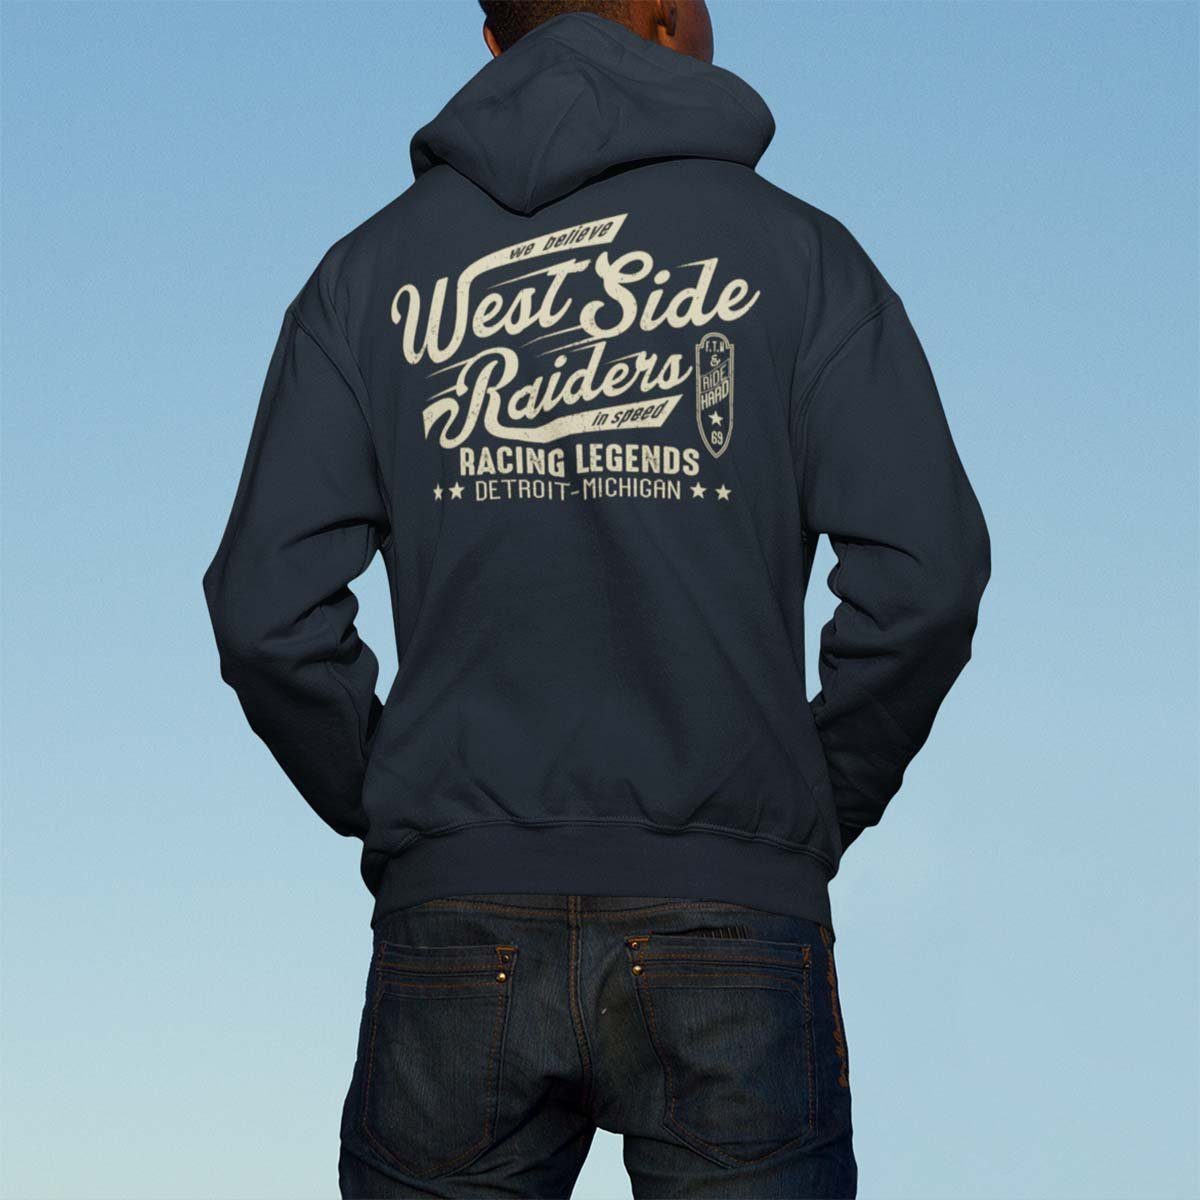 Zip Wheels Side Kapuzensweatjacke Kapuzenjacke, Anthra On West Raiders Biker Motorrad Rebel Motiv / Hoodie Melange mit